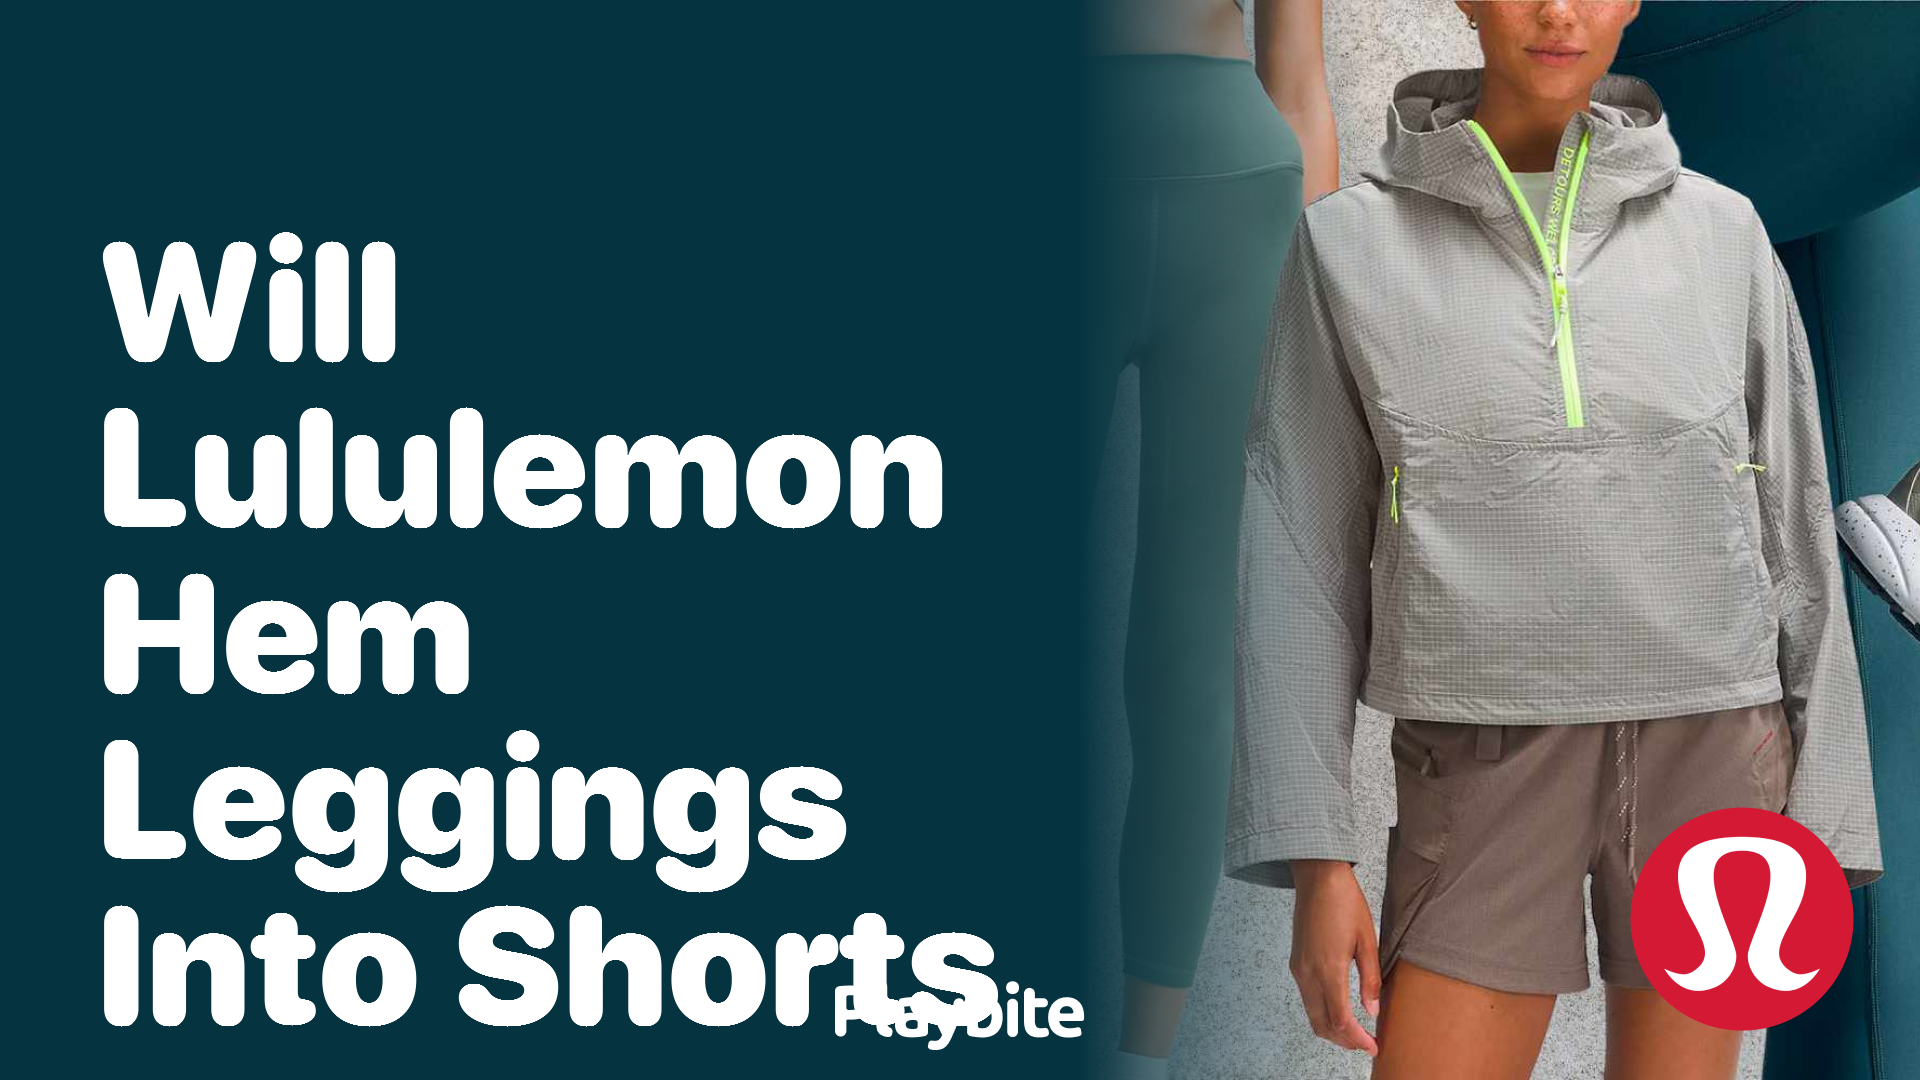 Will Lululemon Hem Leggings Into Shorts? - Playbite